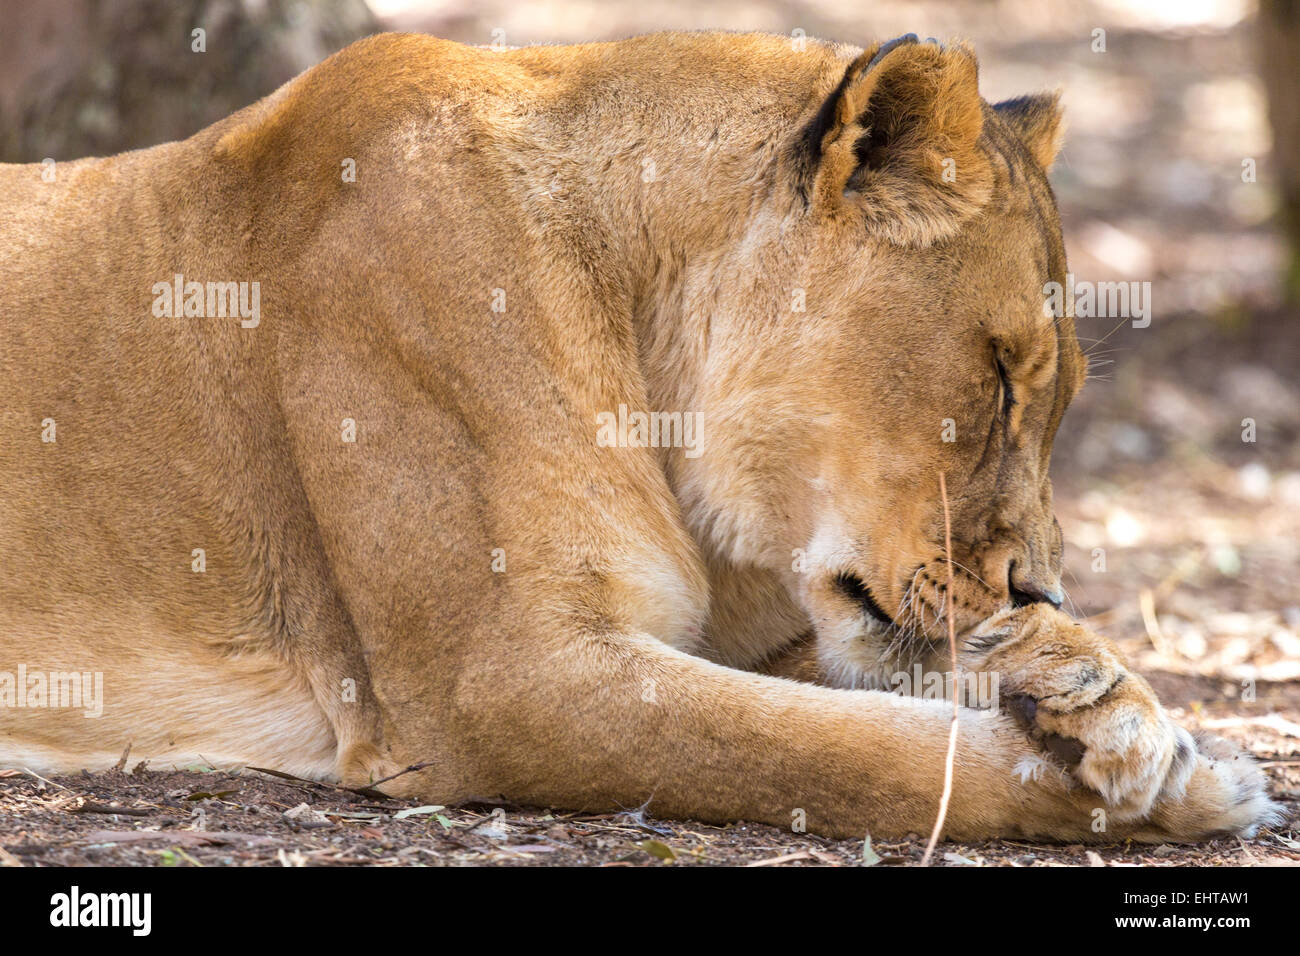 Sleepy Lioness Stock Photo